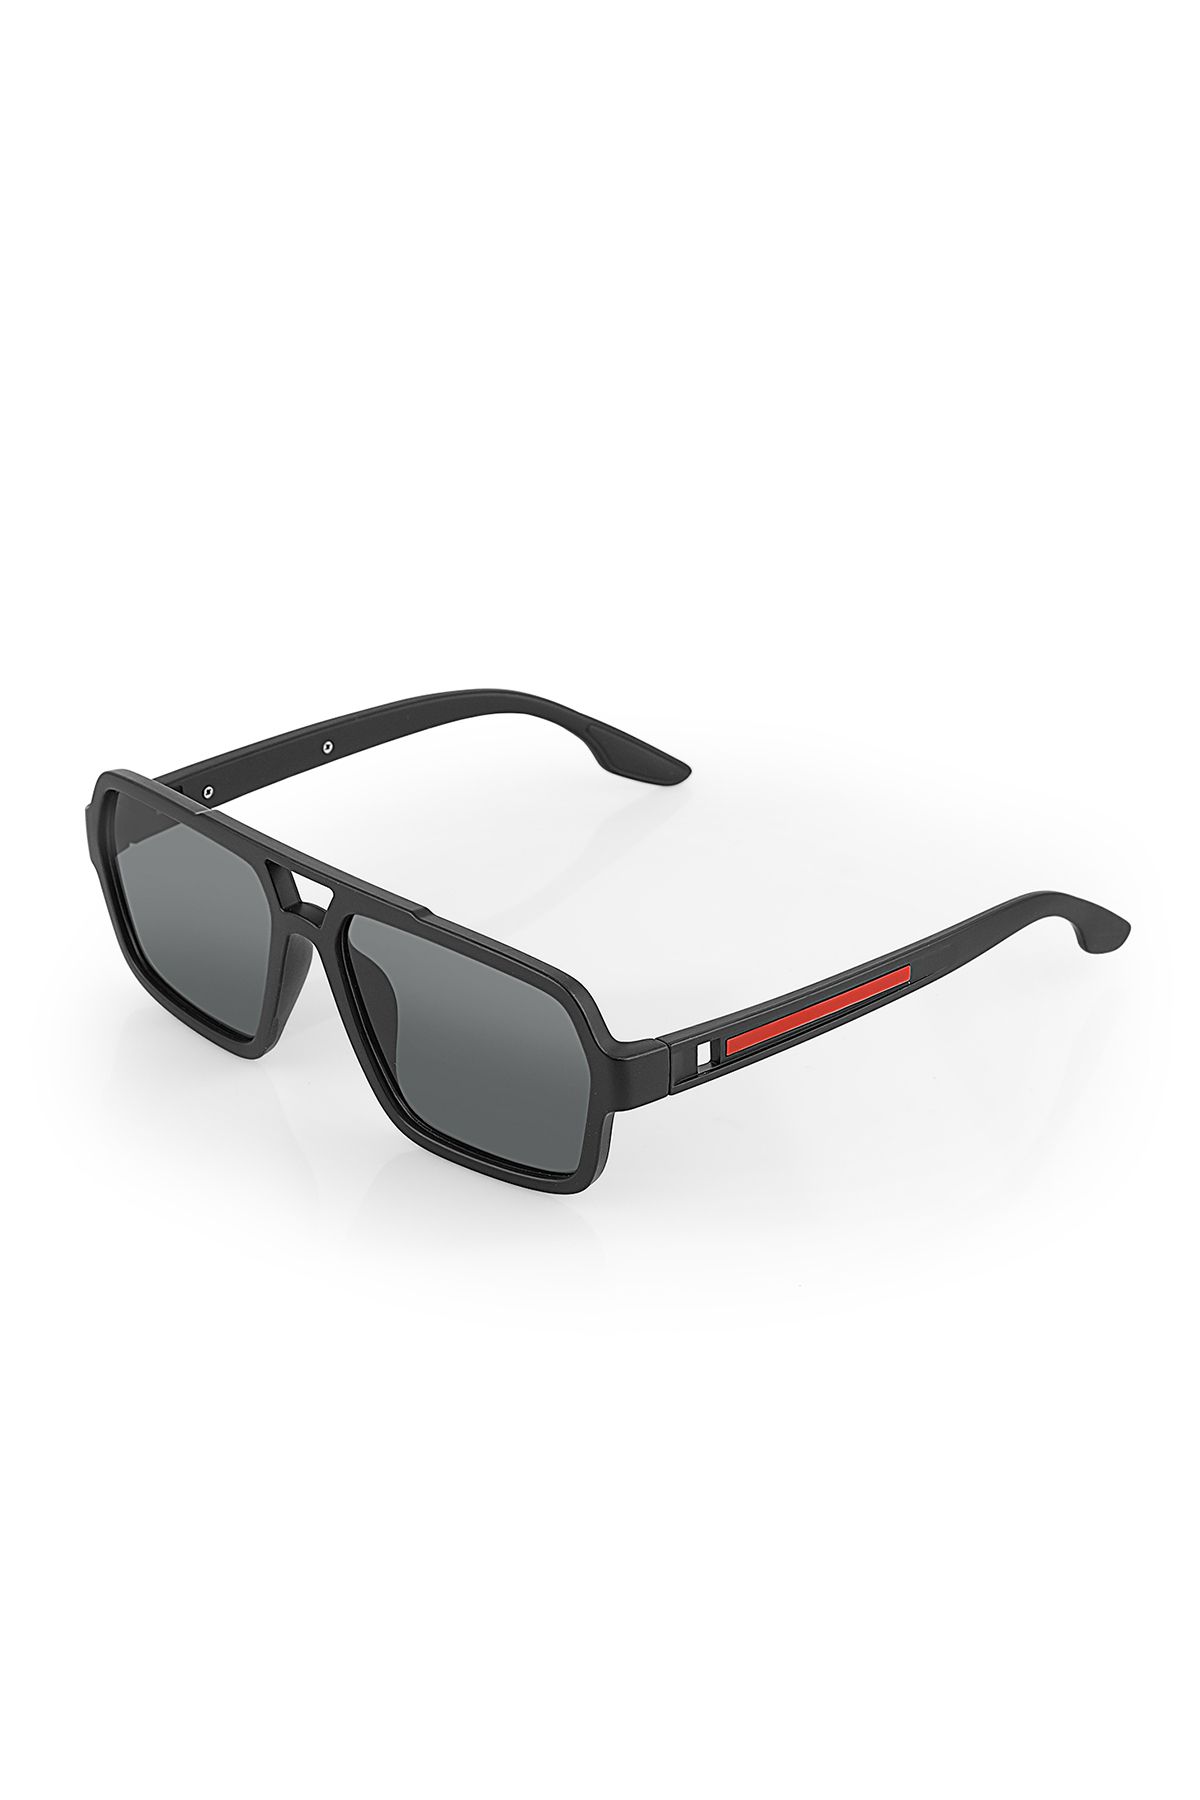 polo air UV400 Korumalı  Spor Erkek Güneş Gözlüğü Siyah